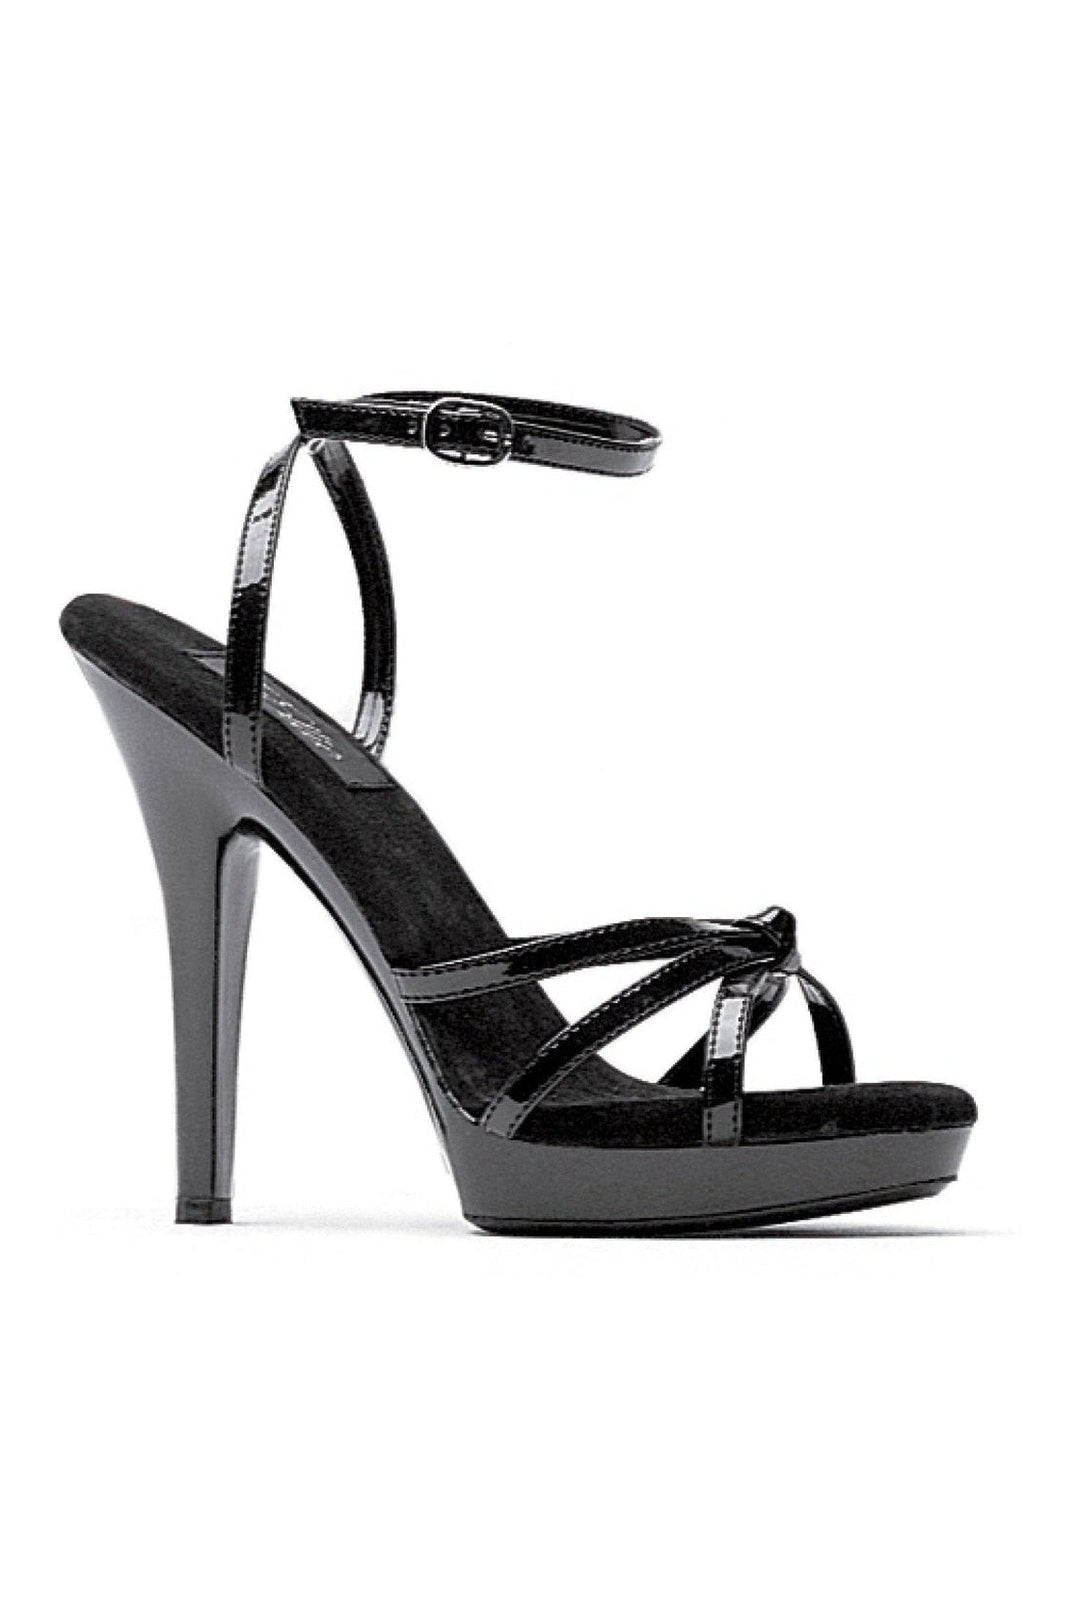 M-GIGI Stripper Sandal | Black Patent-Ellie Shoes-SEXYSHOES.COM